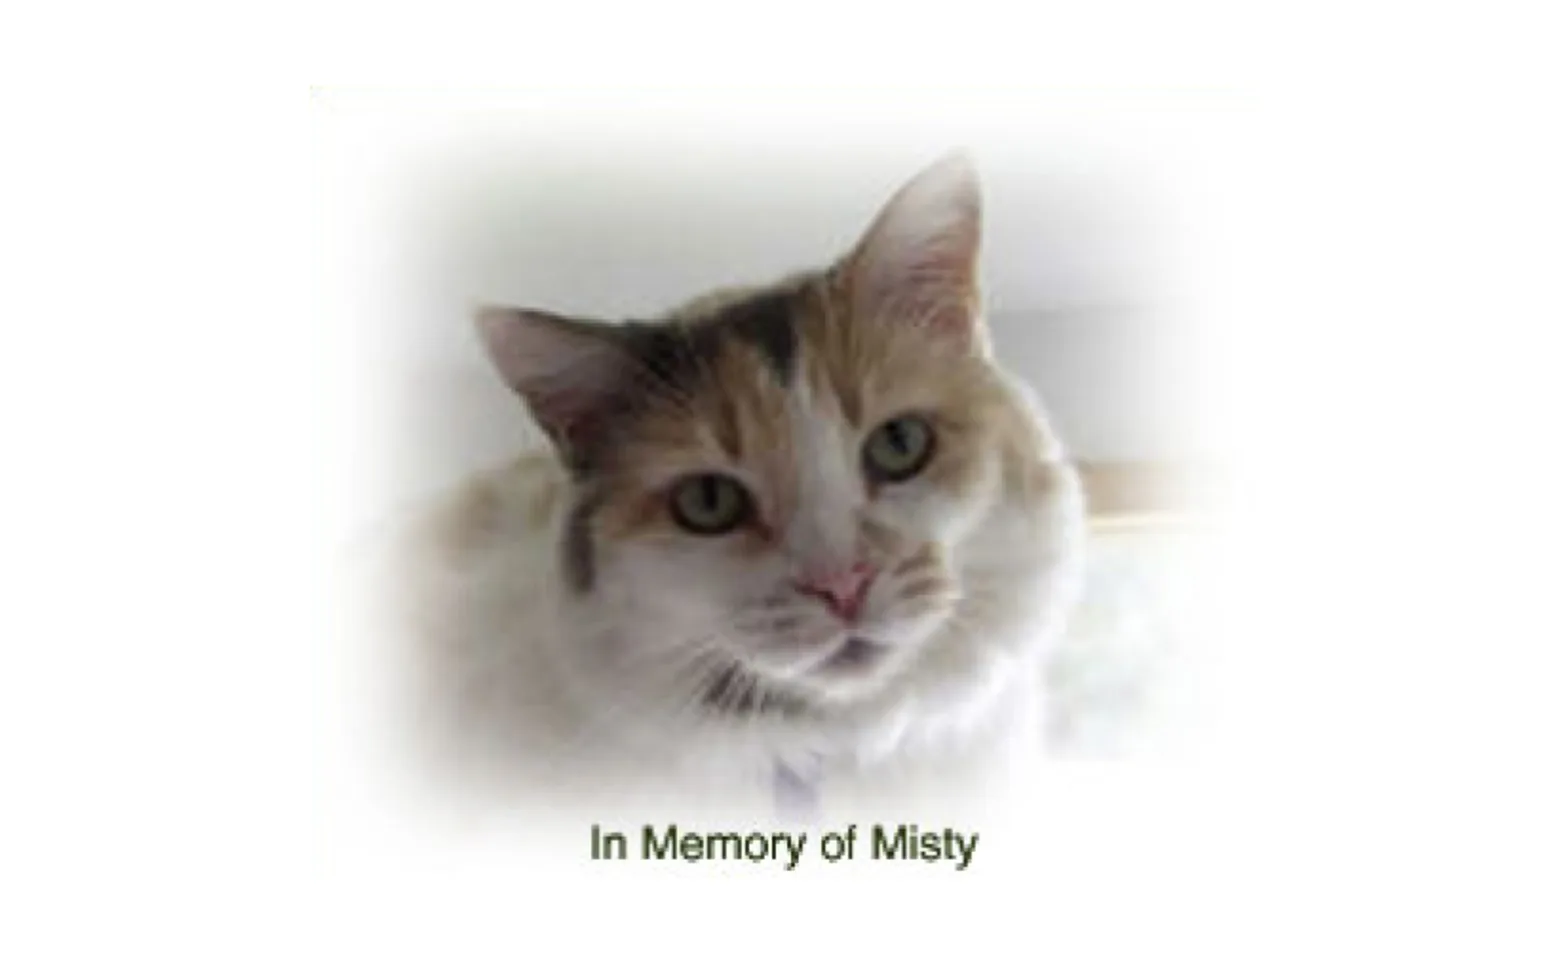 A cat named Misty